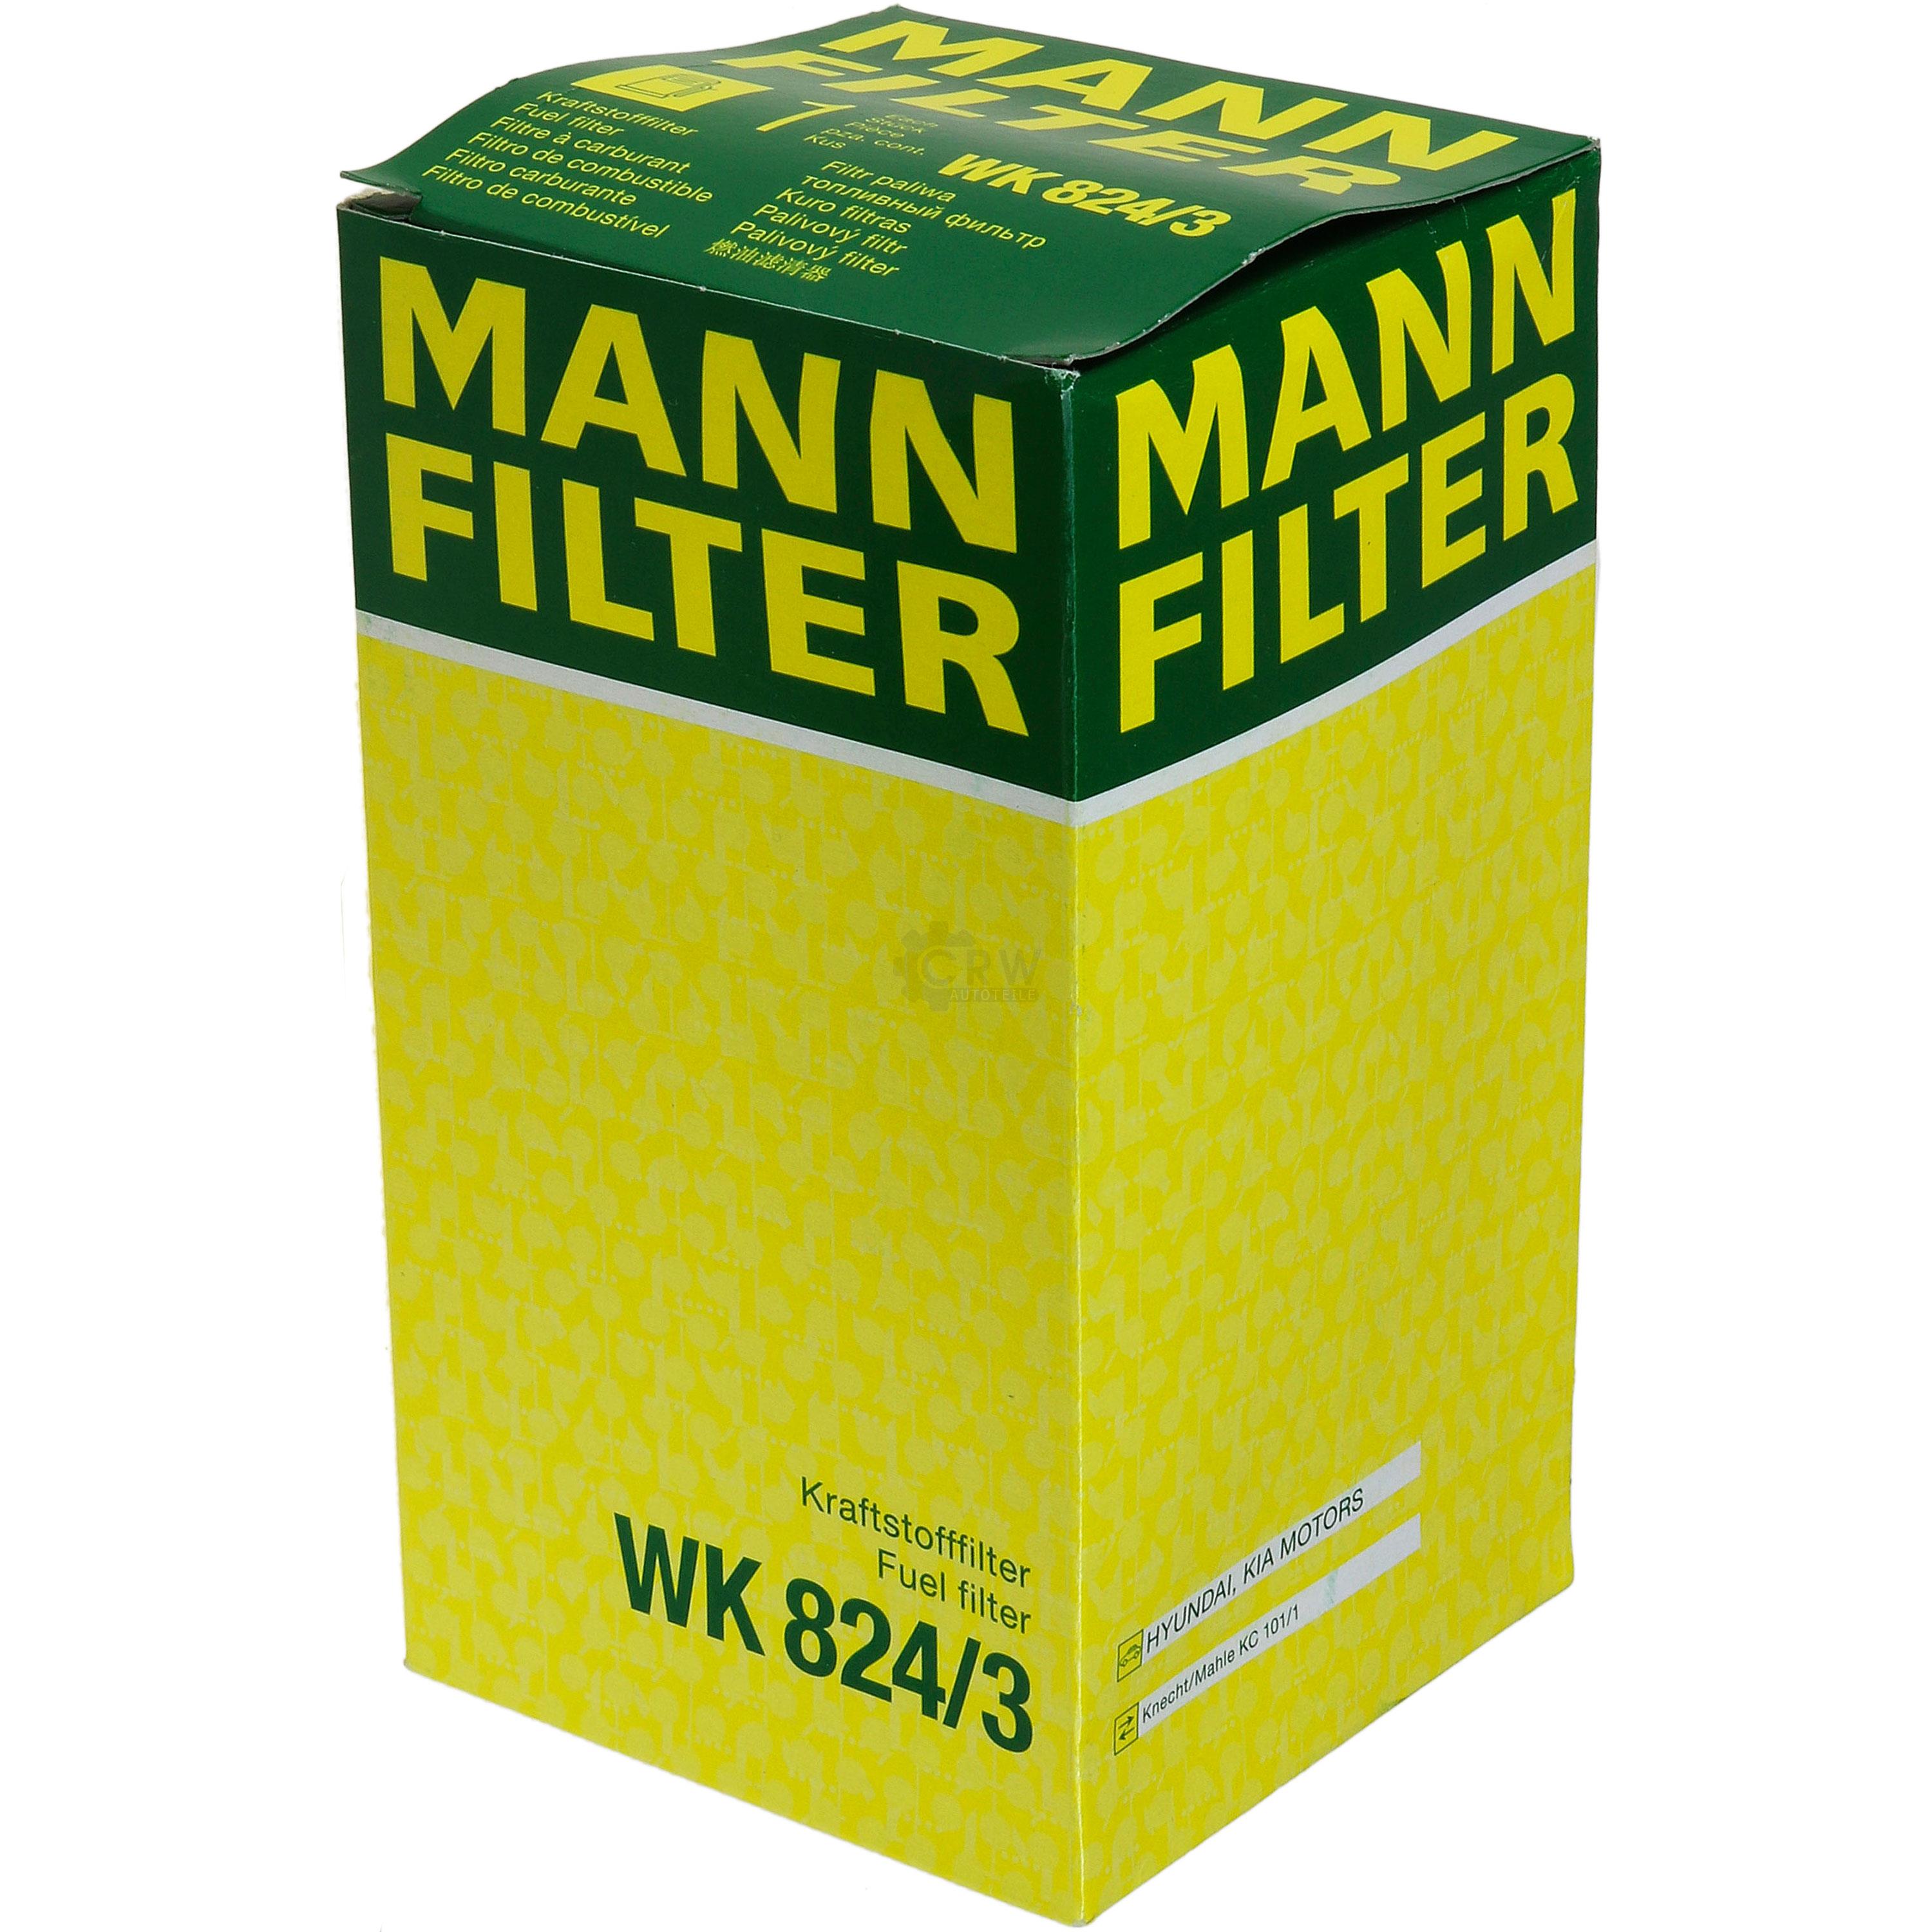 MANN-FILTER Kraftstofffilter WK 824/3 Fuel Filter